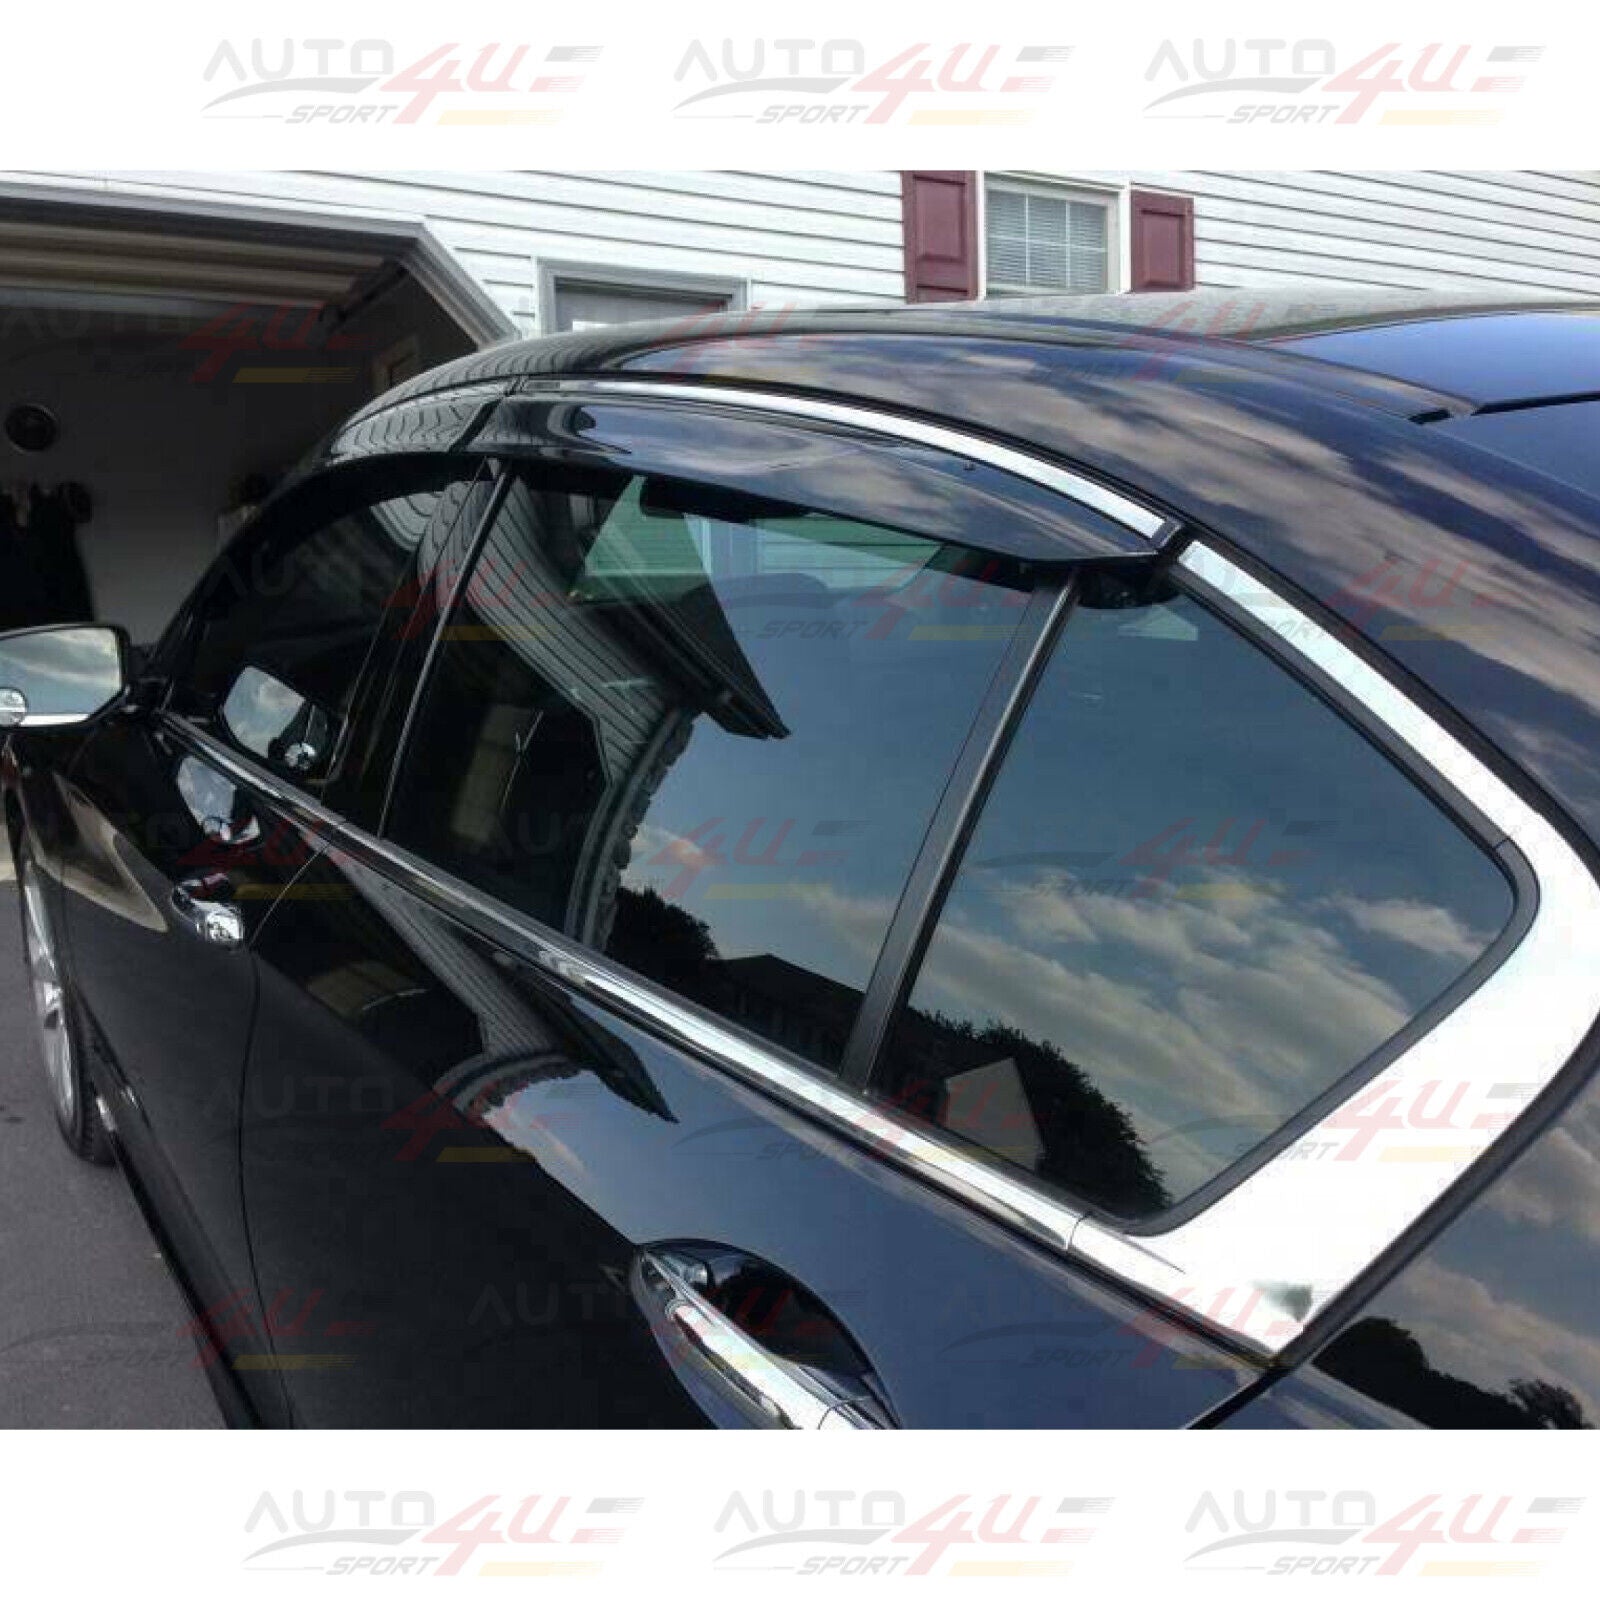 Fits 2014-20 Lexus IS200t 250 300 350 Window Vent Visors w/ Chrome Trims Wind Guards